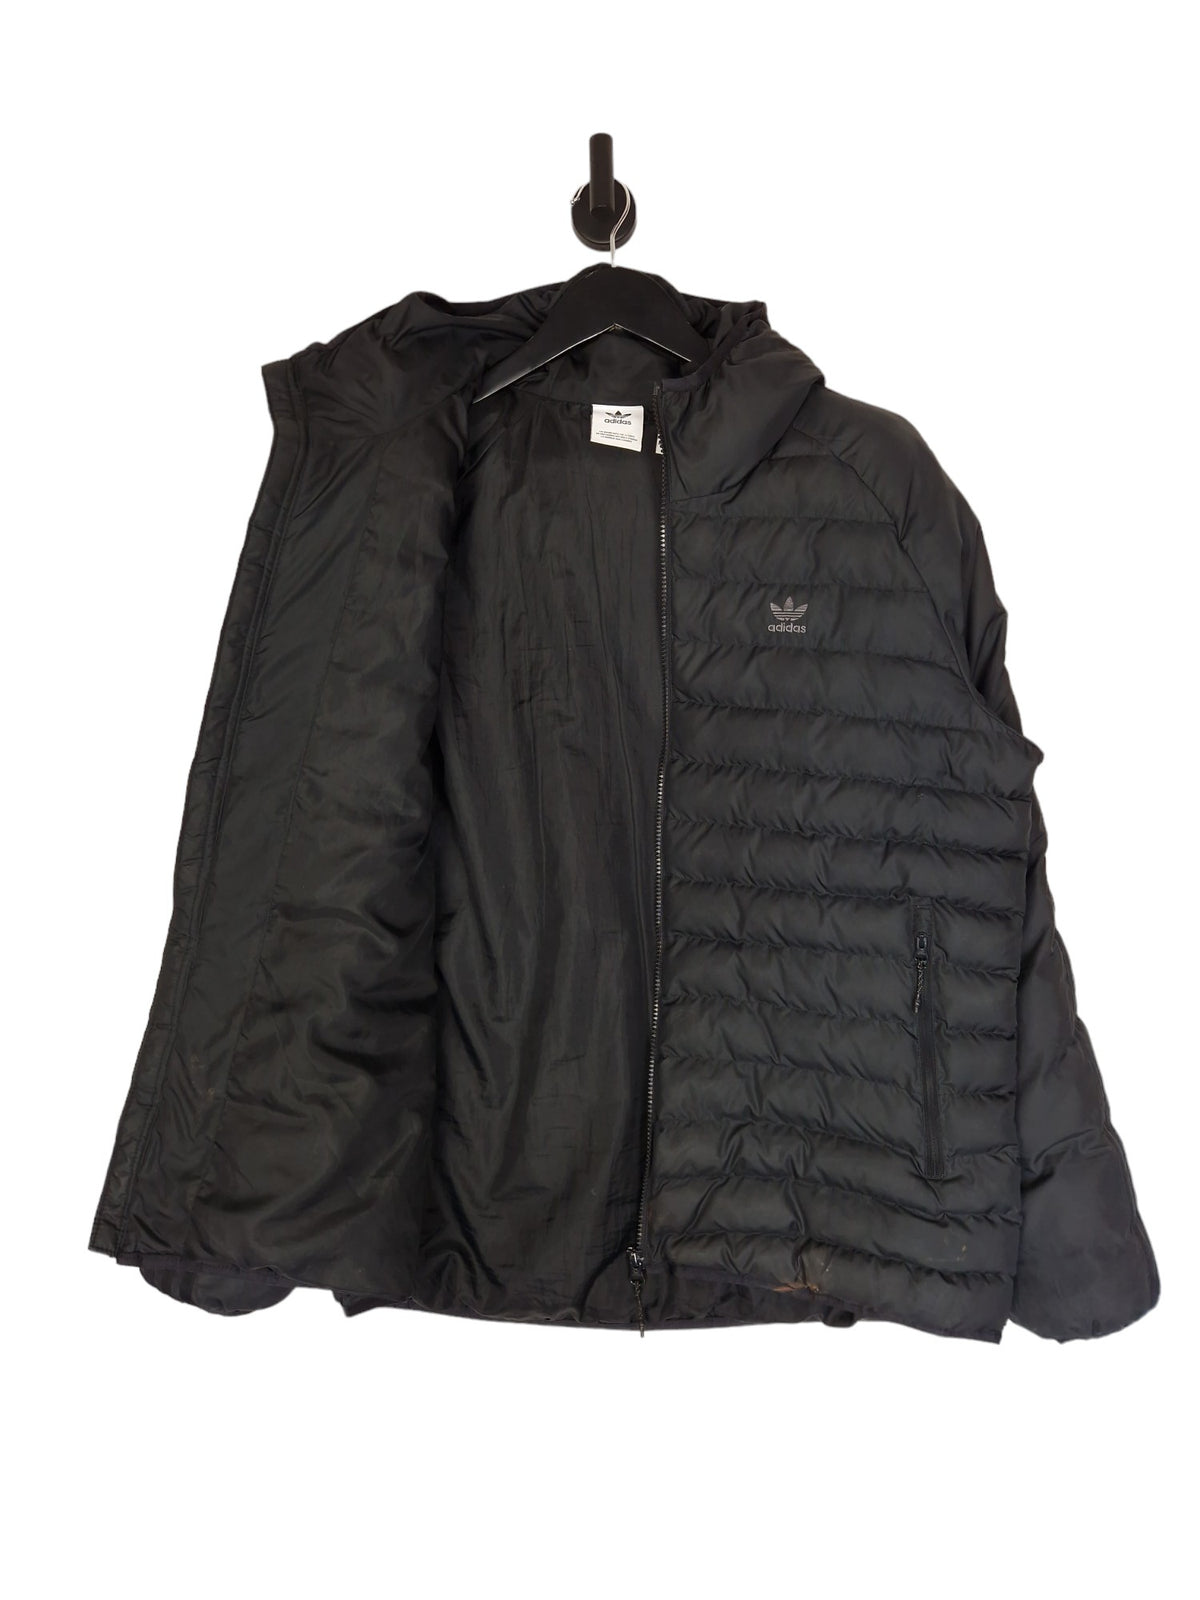 Adidas Puffer Jacket - Size Large